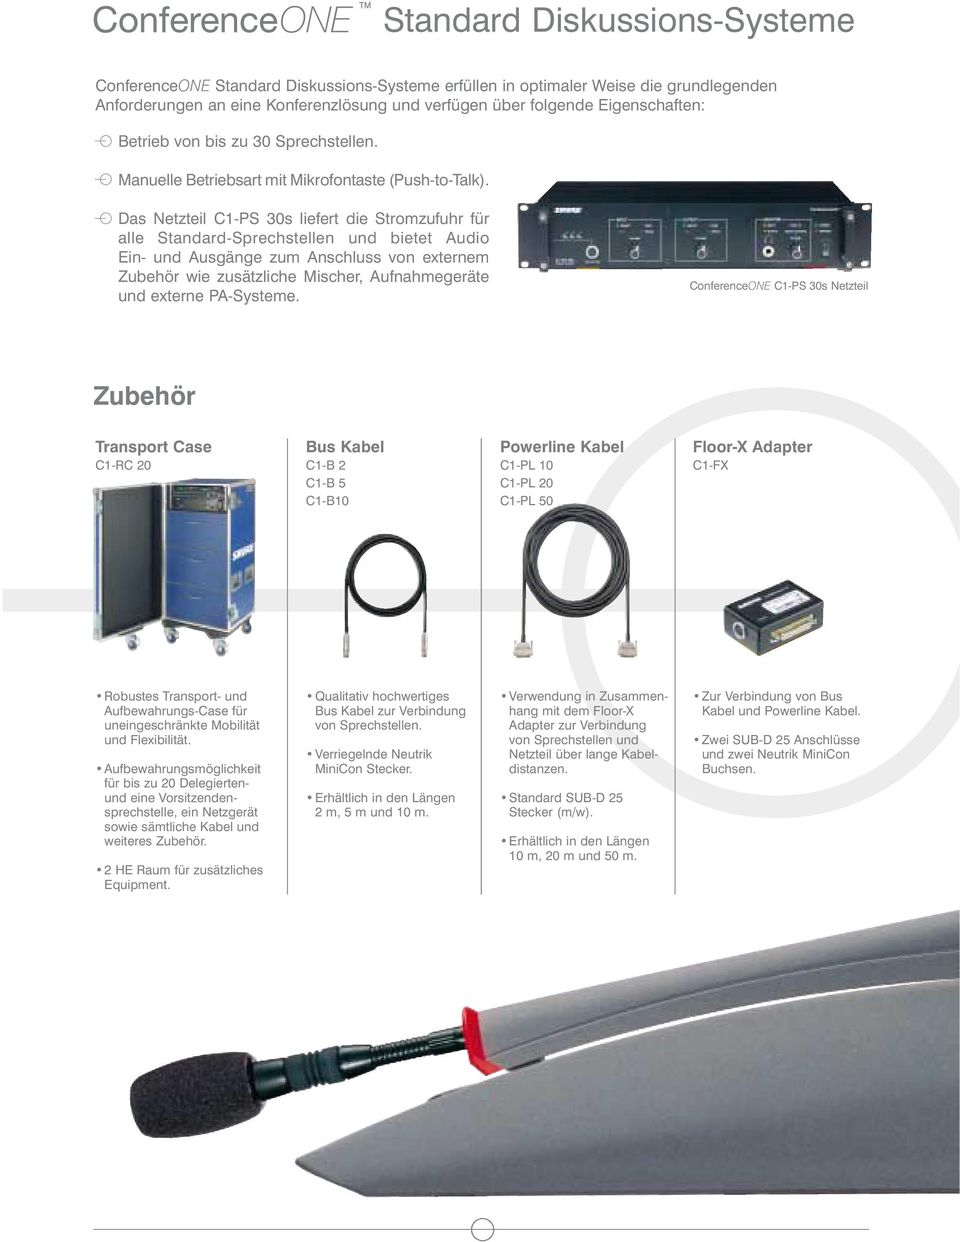 Das Netzteil C1-PS 30s liefert die Stromzufuhr für alle Standard-Sprechstellen und bietet Audio Ein- und Ausgänge zum Anschluss von externem Zubehör wie zusätzliche Mischer, Aufnahmegeräte und